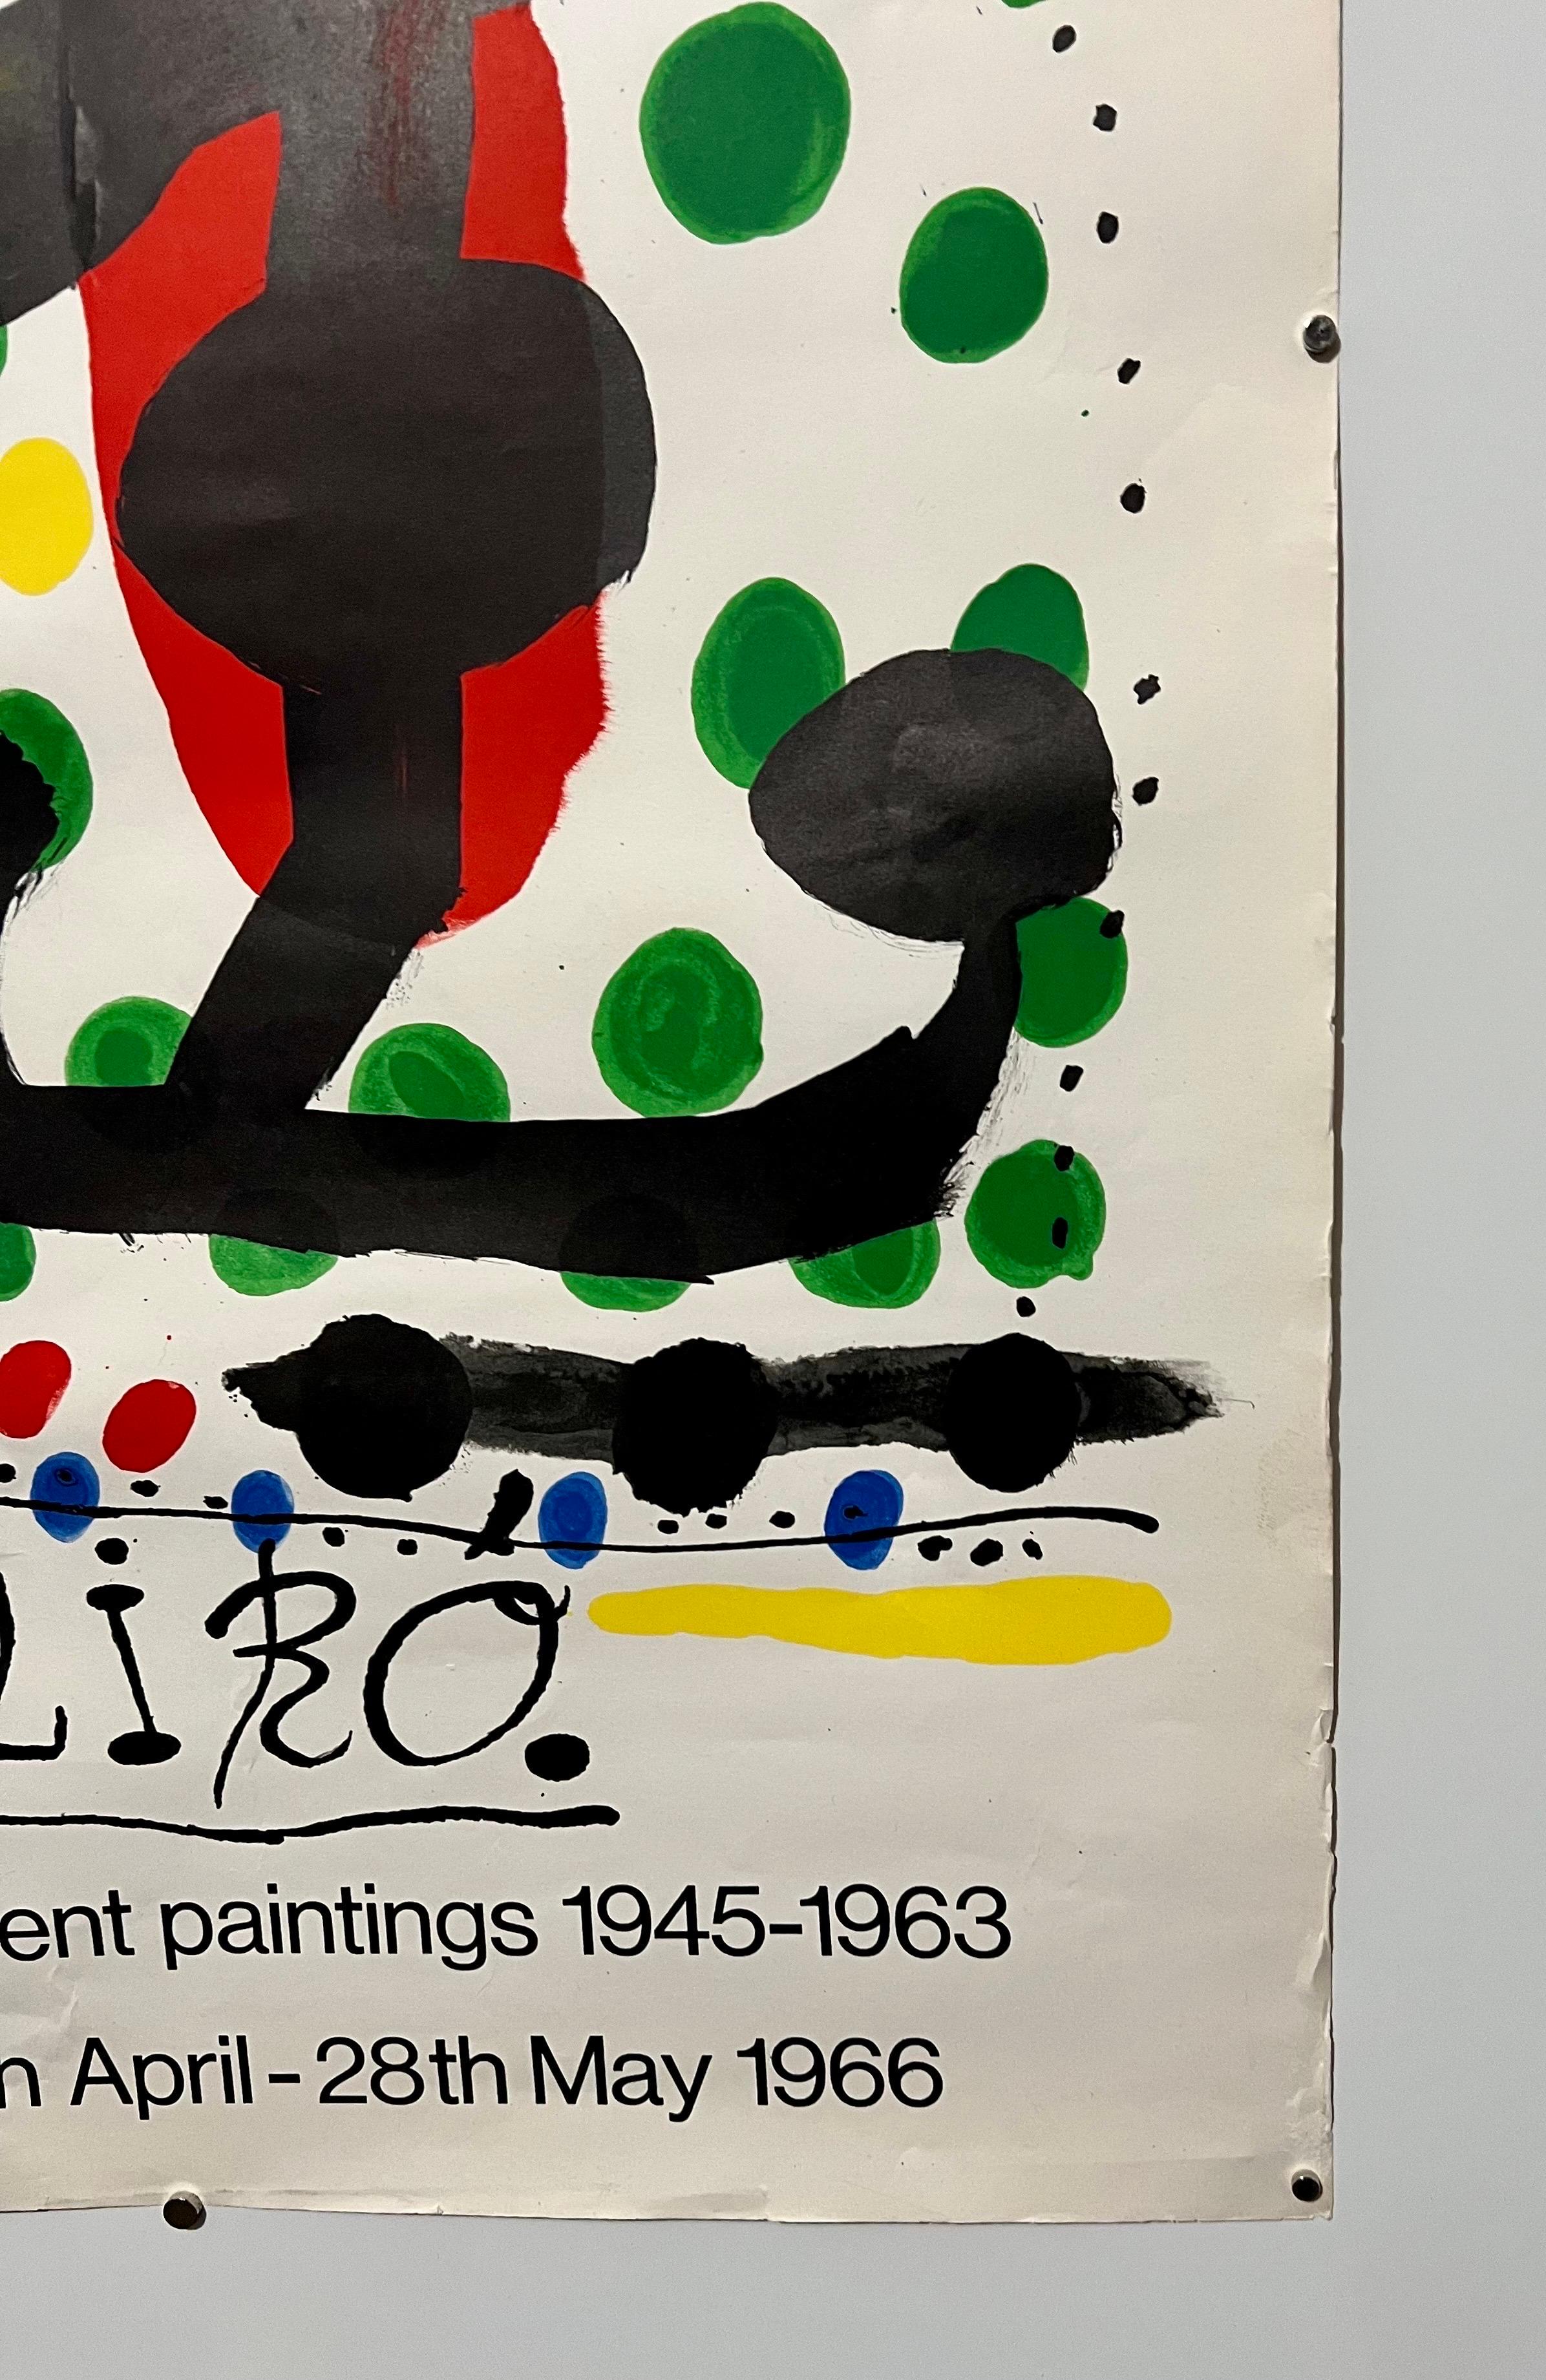 Joan Miro, espagnole (1893-1983)
Affiche lithographique ancienne d'Arte Paris pour une exposition à la Marlborough Gallery à Londres, Angleterre.
Signé dans la plaque
Exposition de peintures récentes 1945-1963
Date : 1966
Taille : 29.25 in. x 19.75